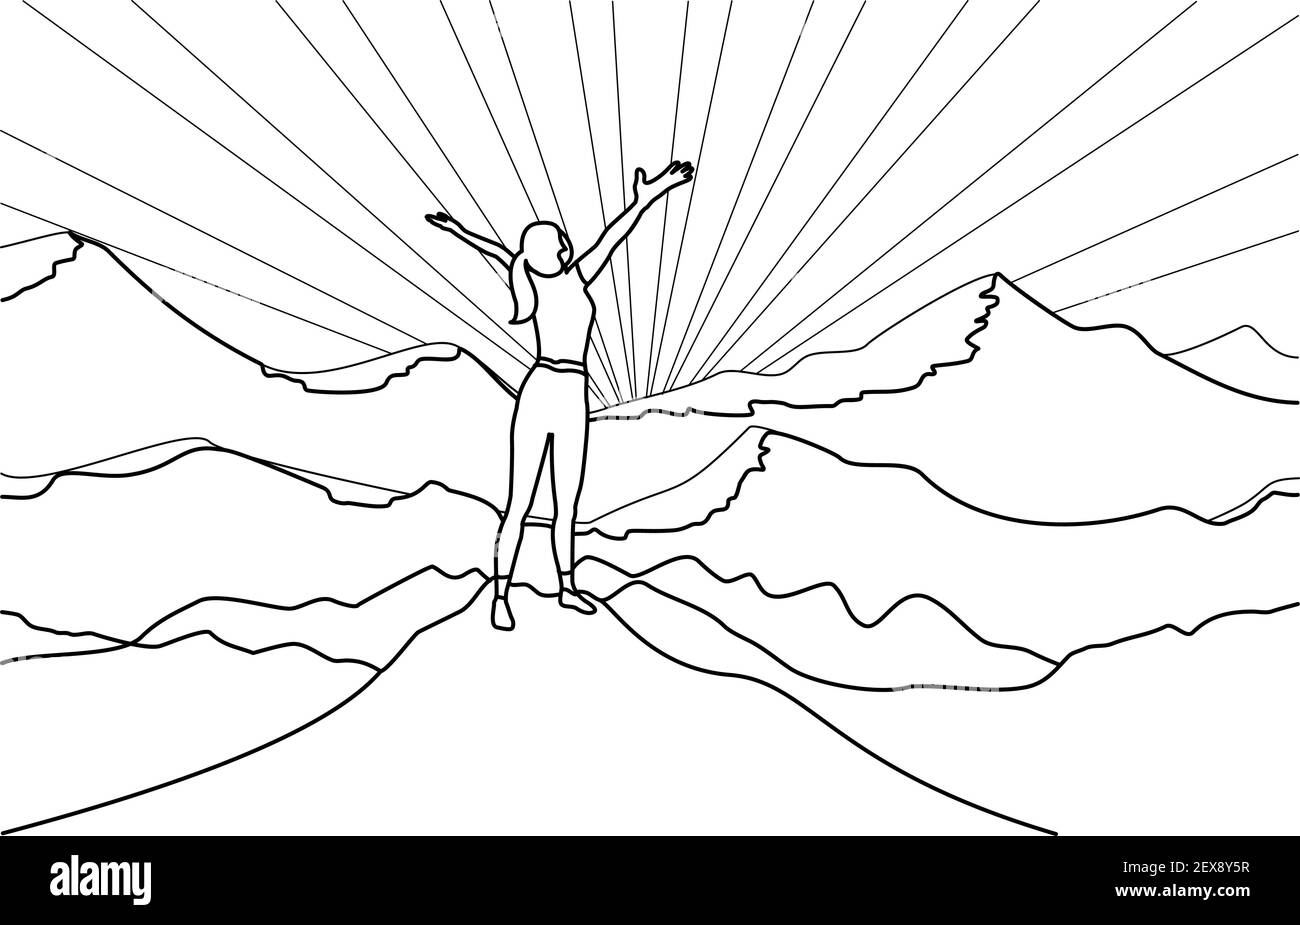 Linie Kunst Zeichnung der erfolgreichen Frau Wanderer genießen Sie die Aussicht mit offenen Armen auf Klippe Kante Spitze des Berges und Sonnenschein Hintergrund. Stock Vektor